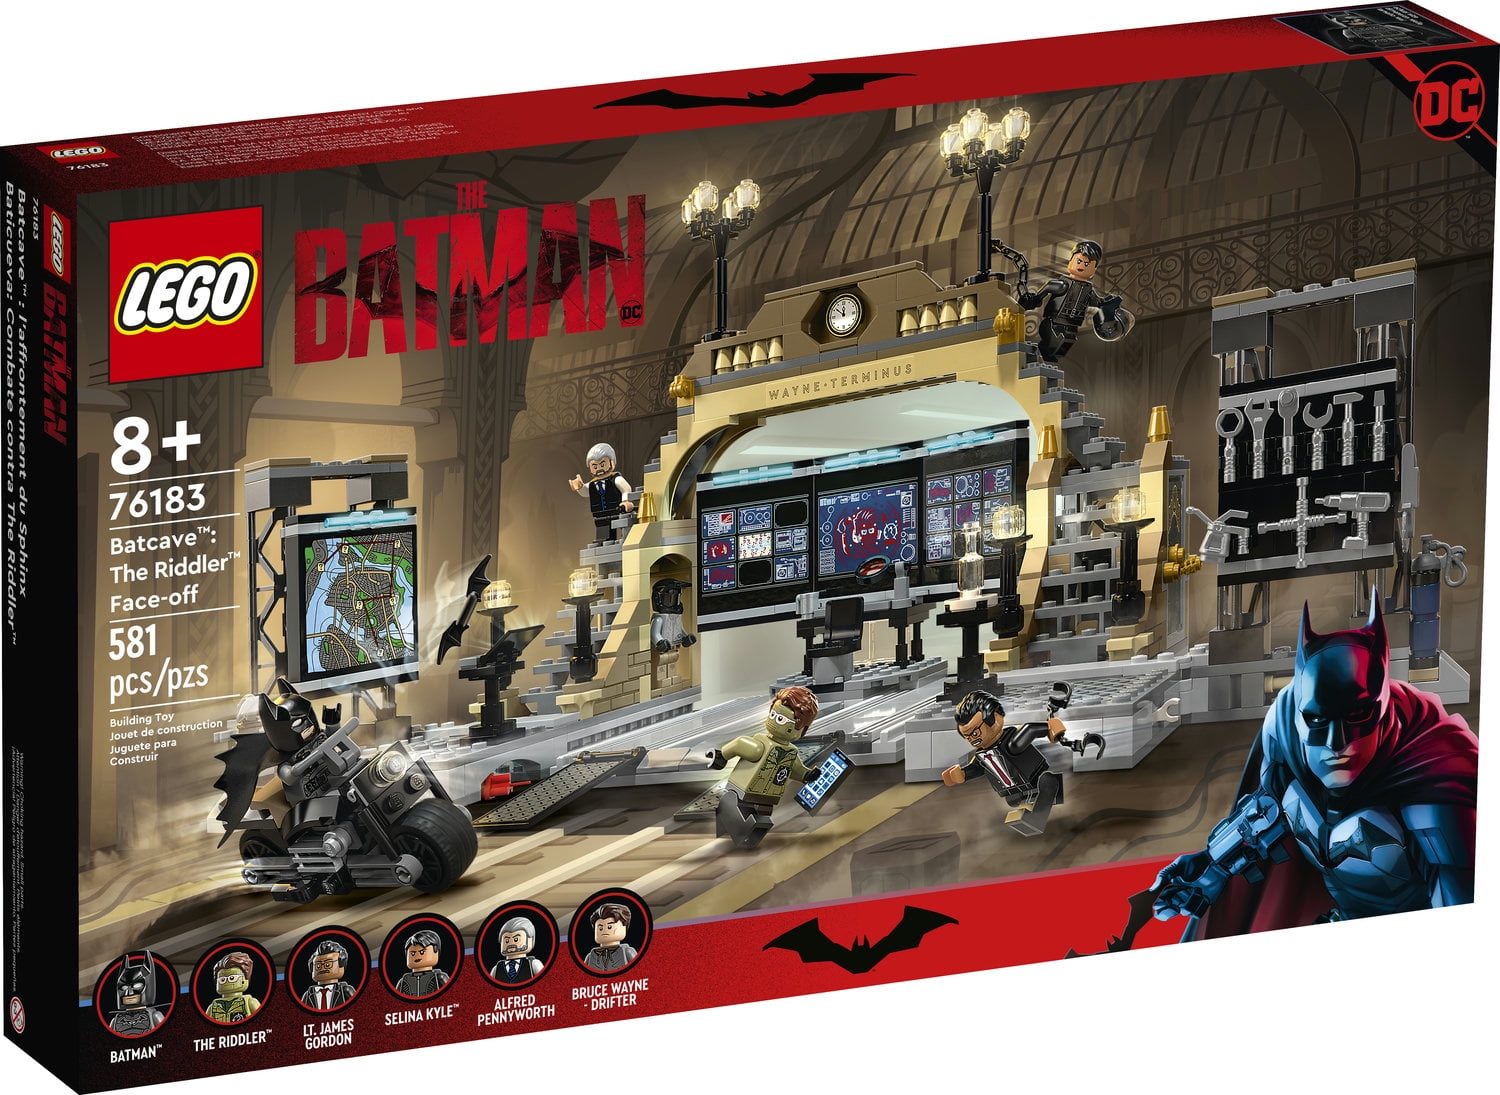 LEGO DC The Batman Batcave The Riddler Face-off 76183 Building Set (581 Pieces) -